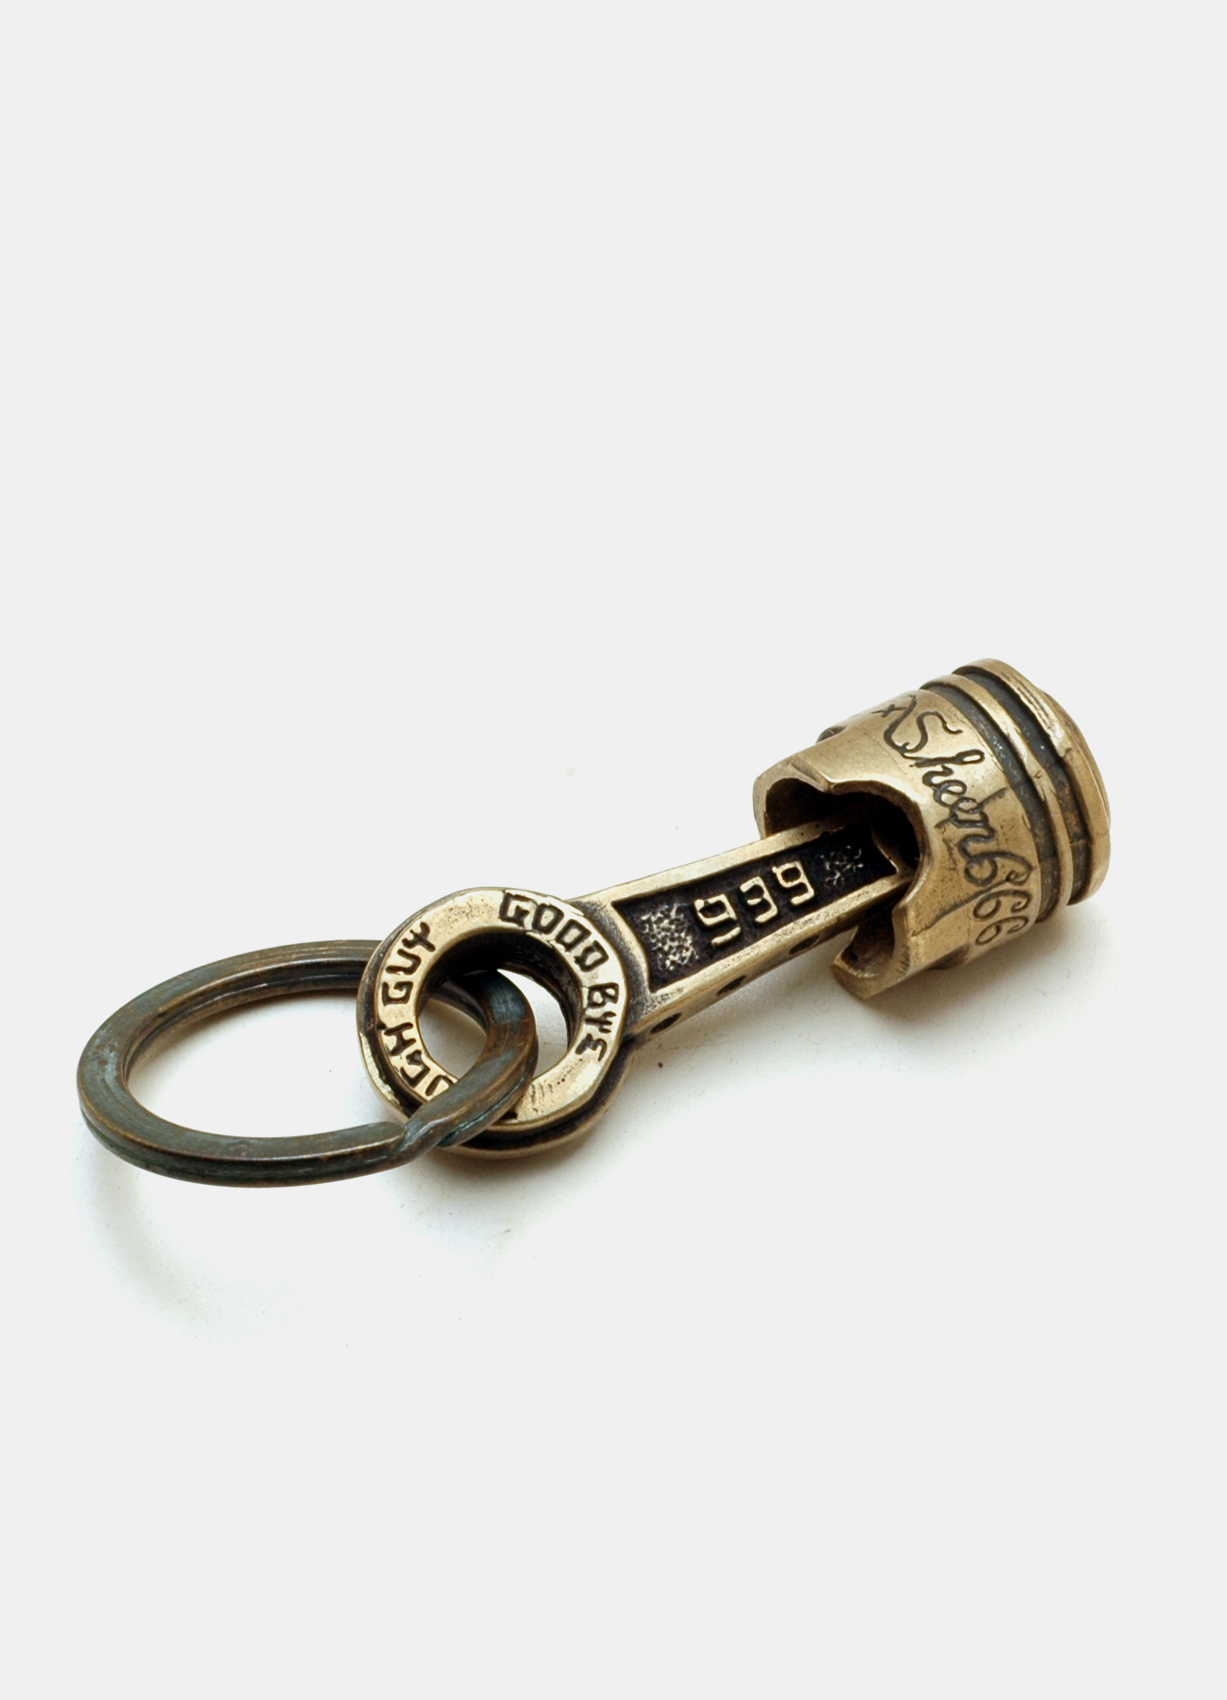 Brass Piston Key Holder